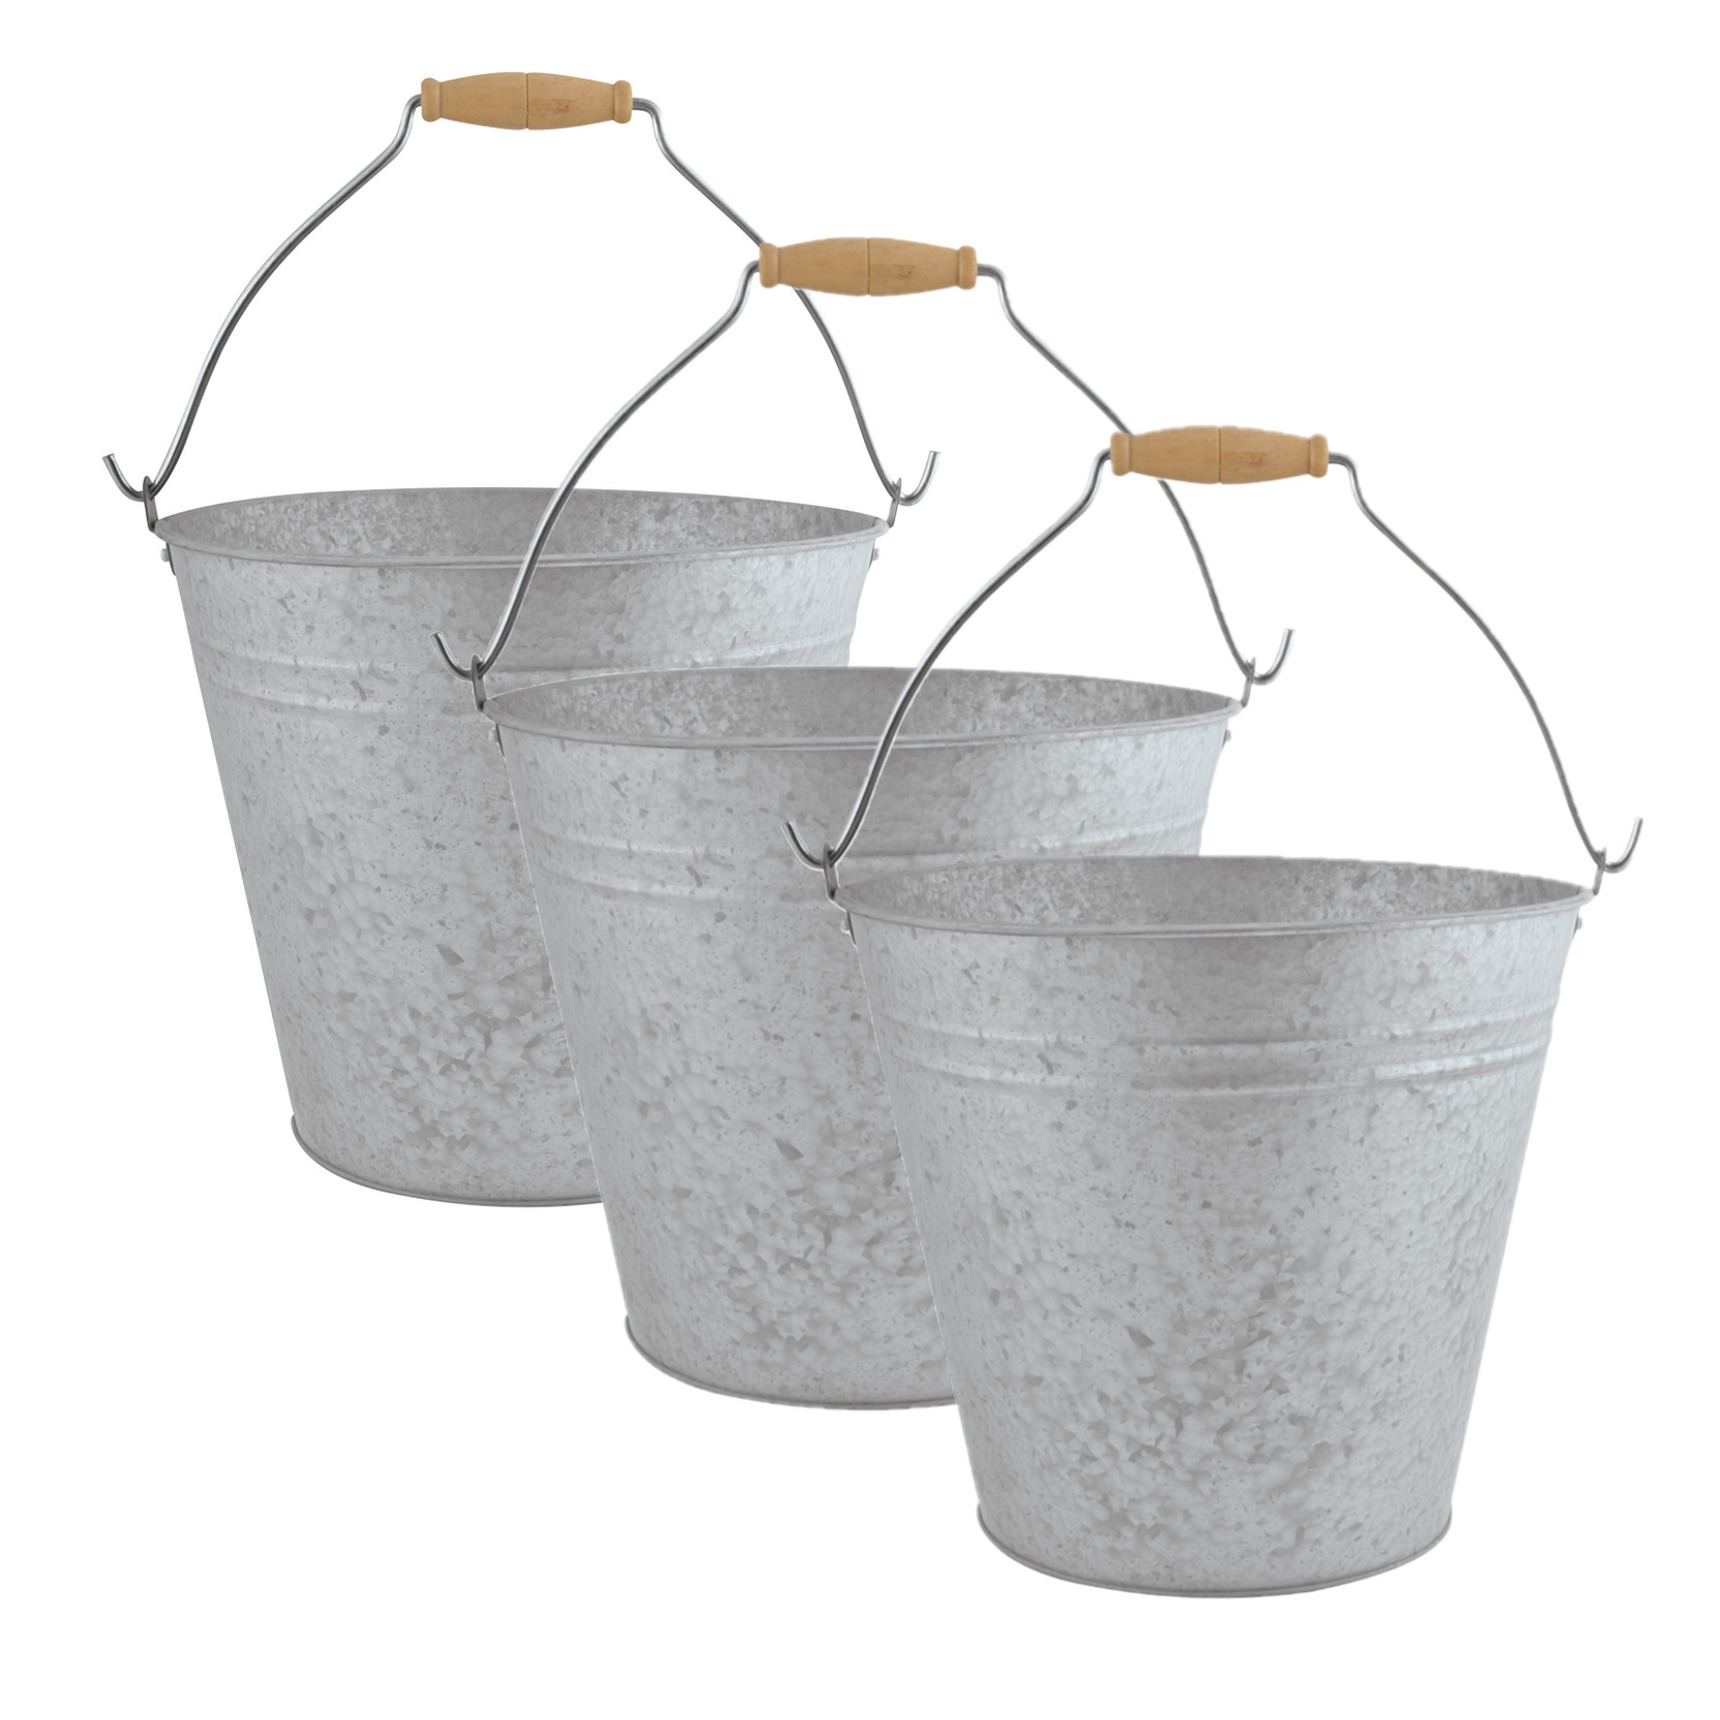 3x stuks zinken emmers-bloempotten-plantenpotten met handvat 9,5 liter